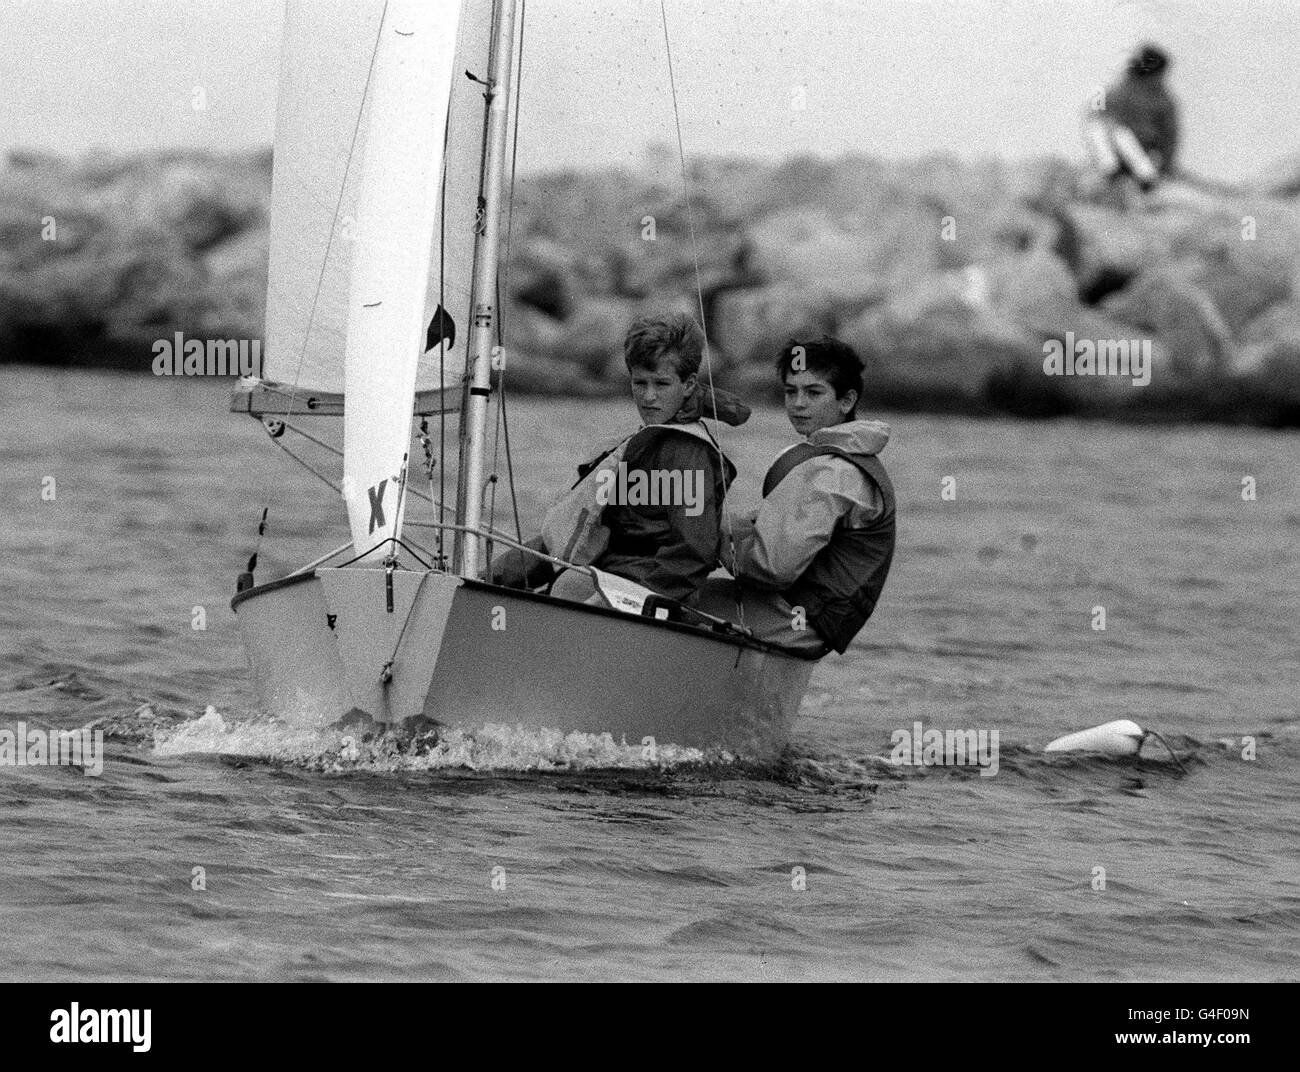 PA NEWS FOTO 23/10/88 PETER PHILLIPS (sinistra) equipaggi su un dinghy durante una lezione di scuola di vela presso la West Kirby Sailing Club sul WIRRAL Foto Stock